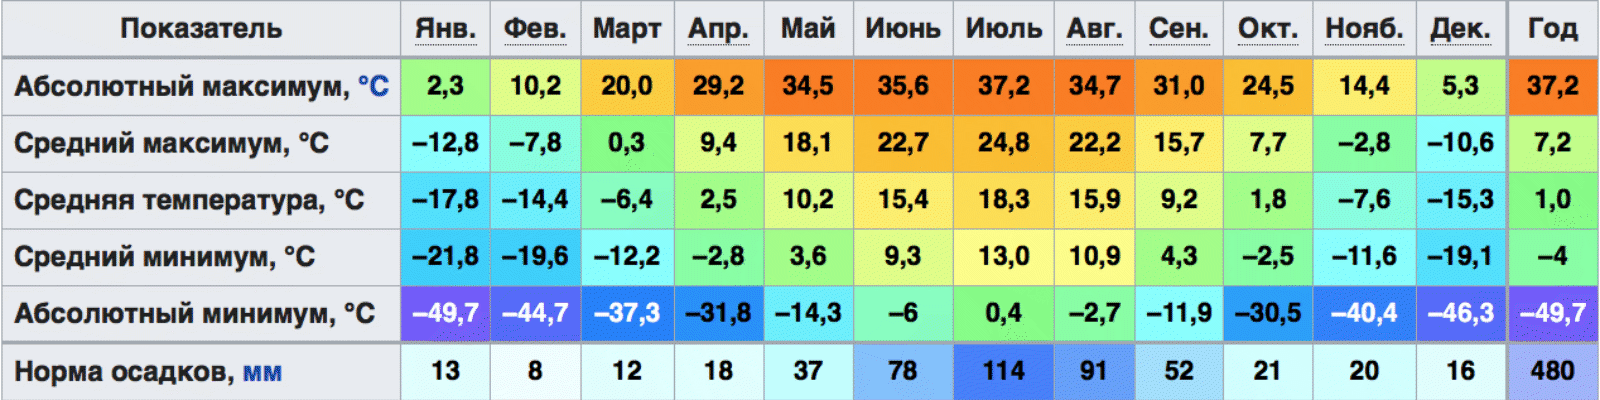 Средняя температура июля в ростове. Климат Мурманской области таблица. Средняя температура в Петропавловске Камчатском в январе и июле. Средняя температура января в Петропавловске-Камчатском.